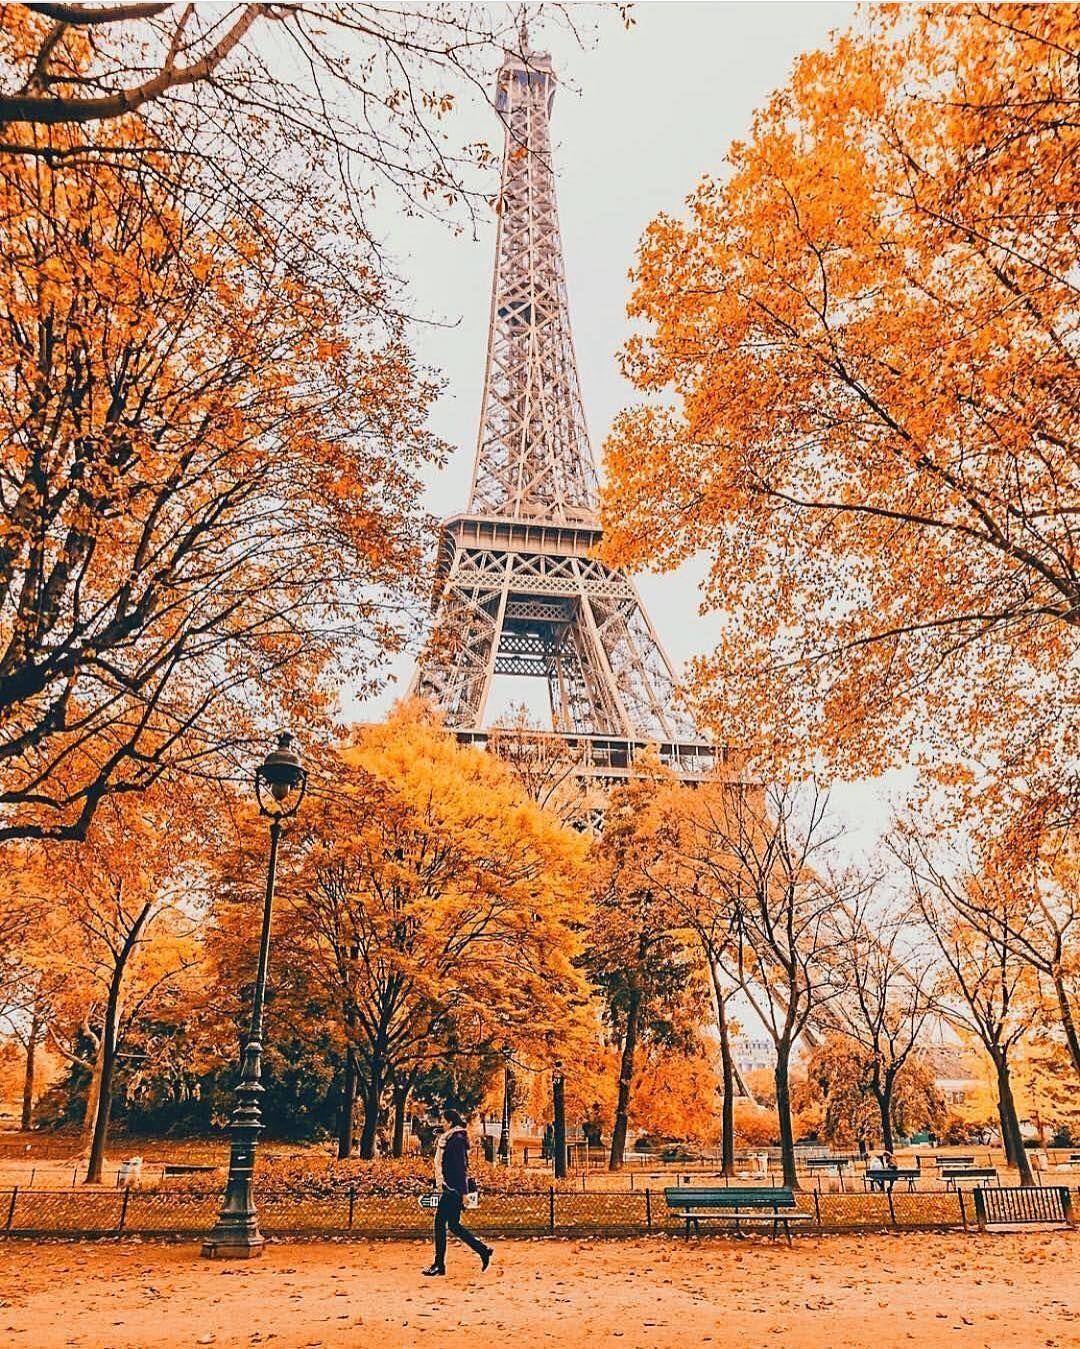 Paris Autumn Wallpapers Top Free Paris Autumn Backgrounds